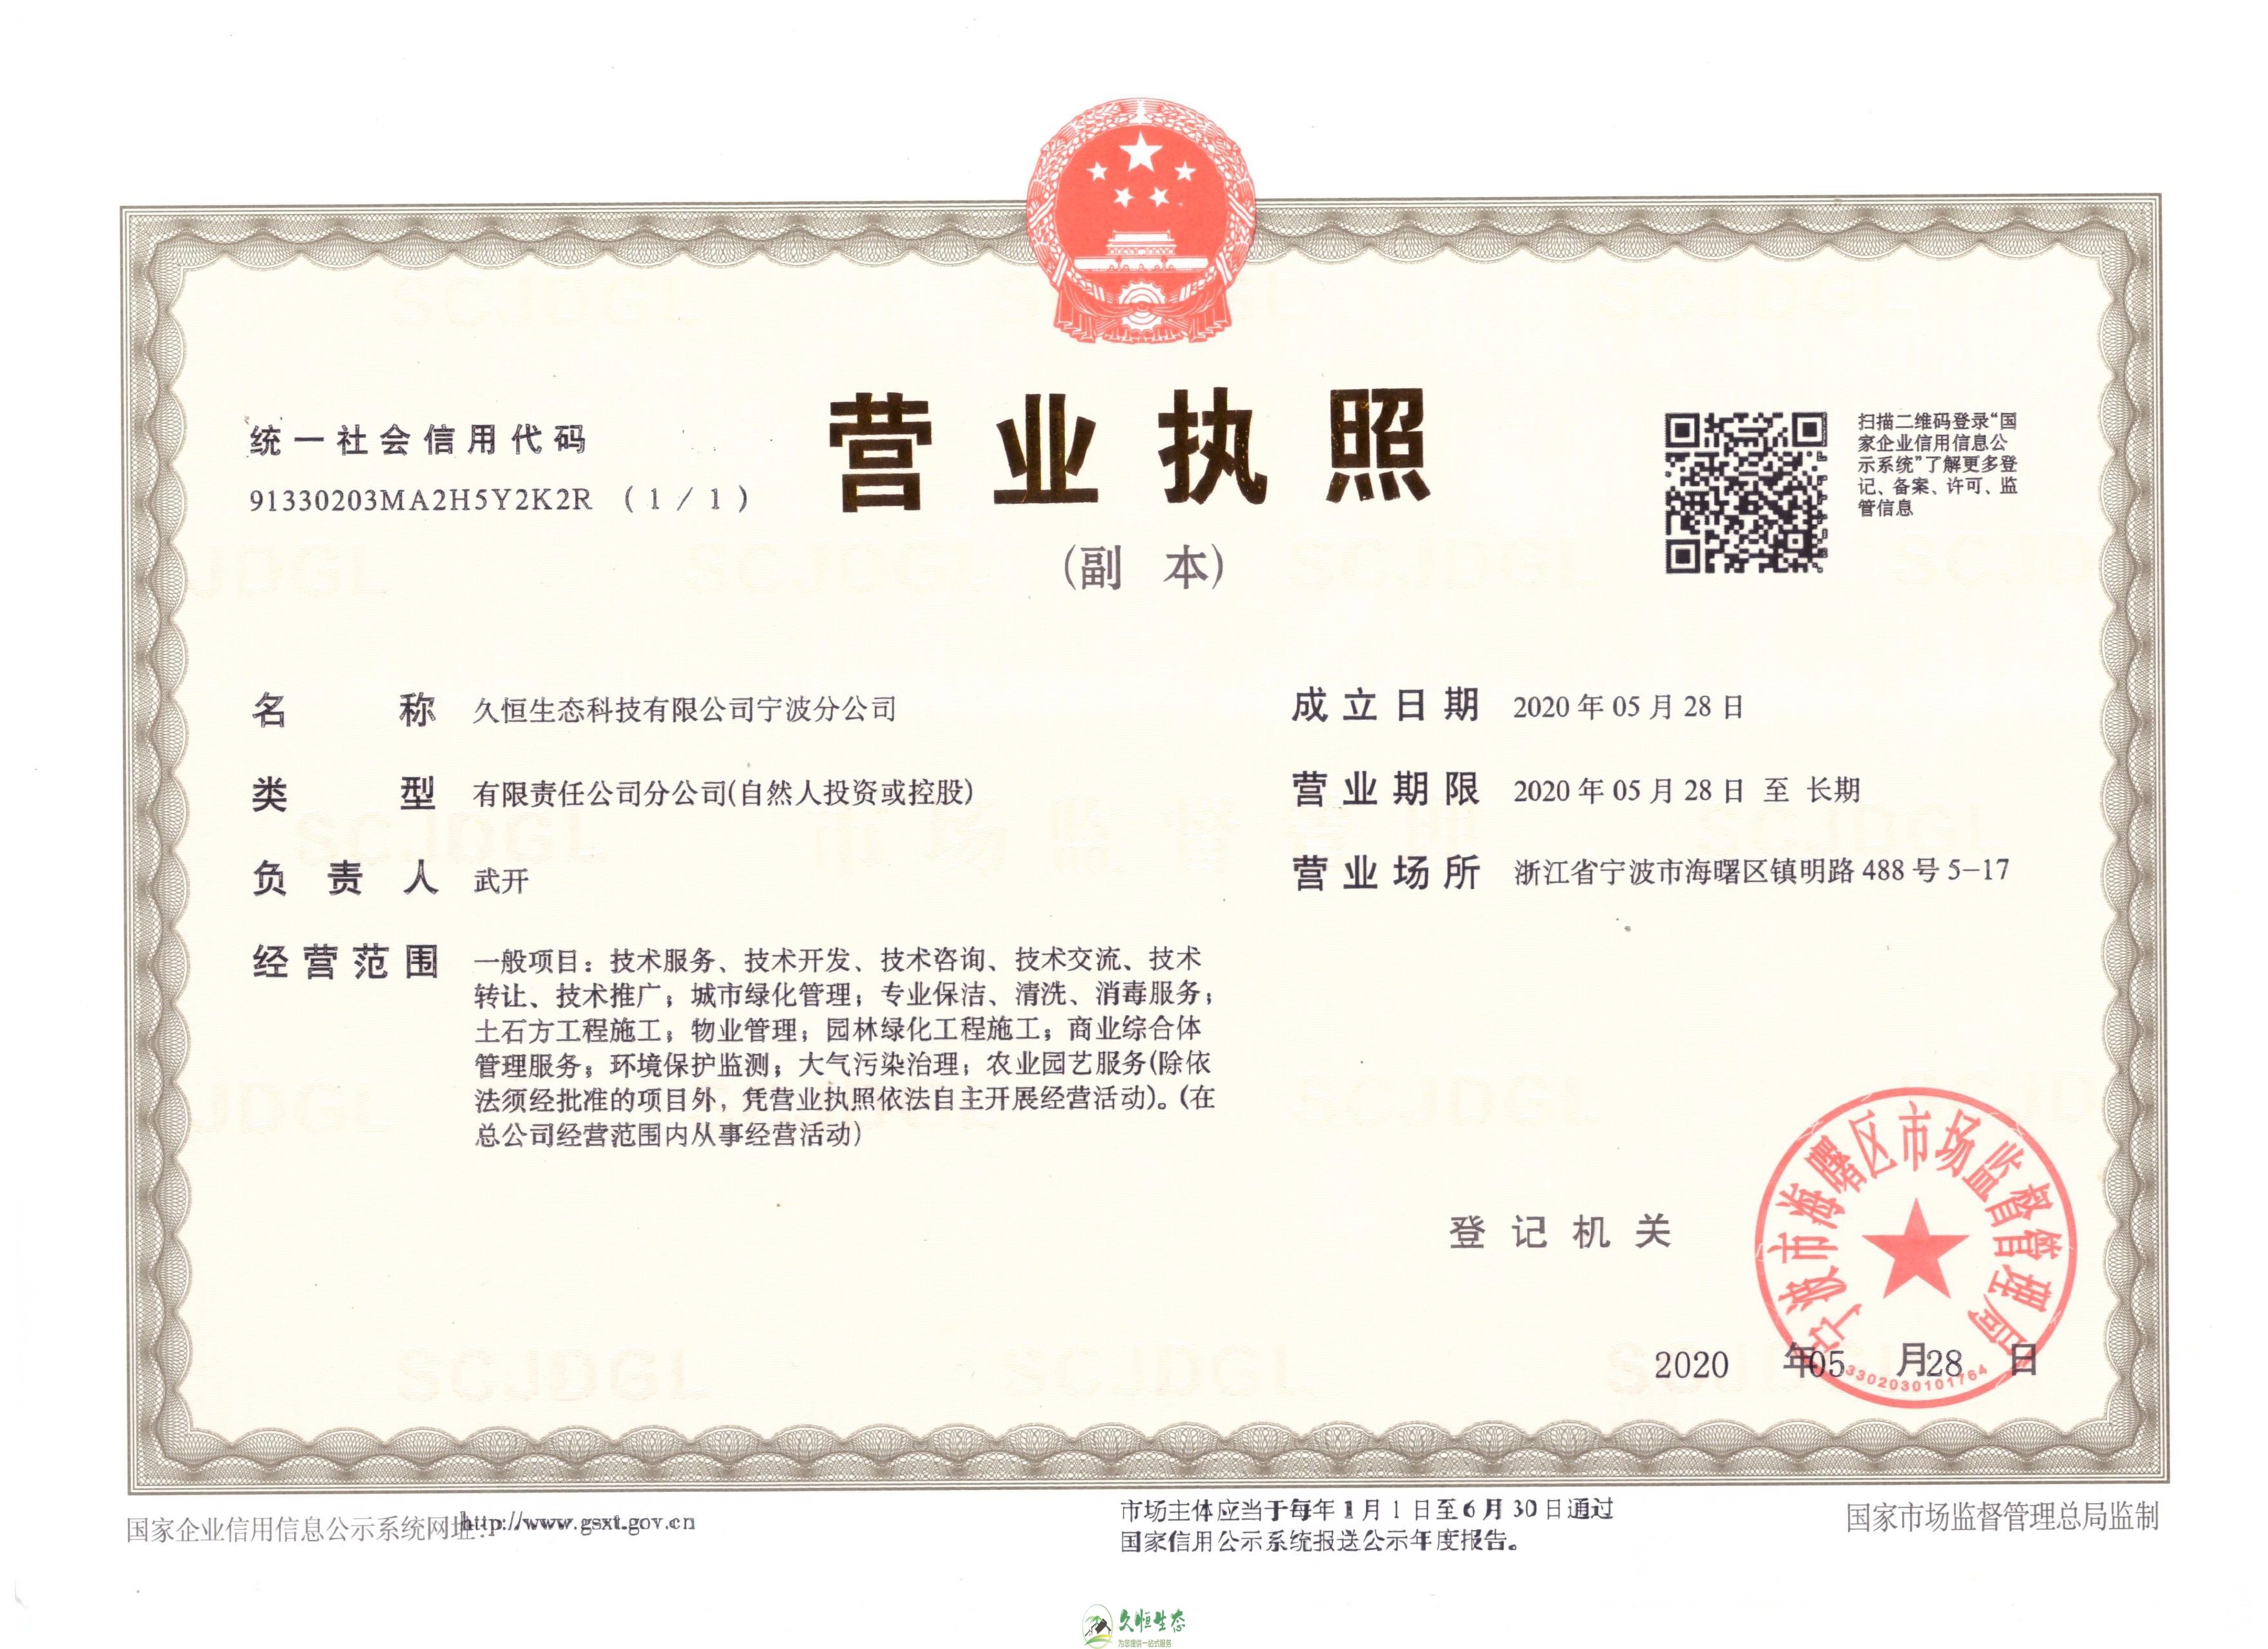 武汉武昌久恒生态宁波分公司2020年5月28日成立